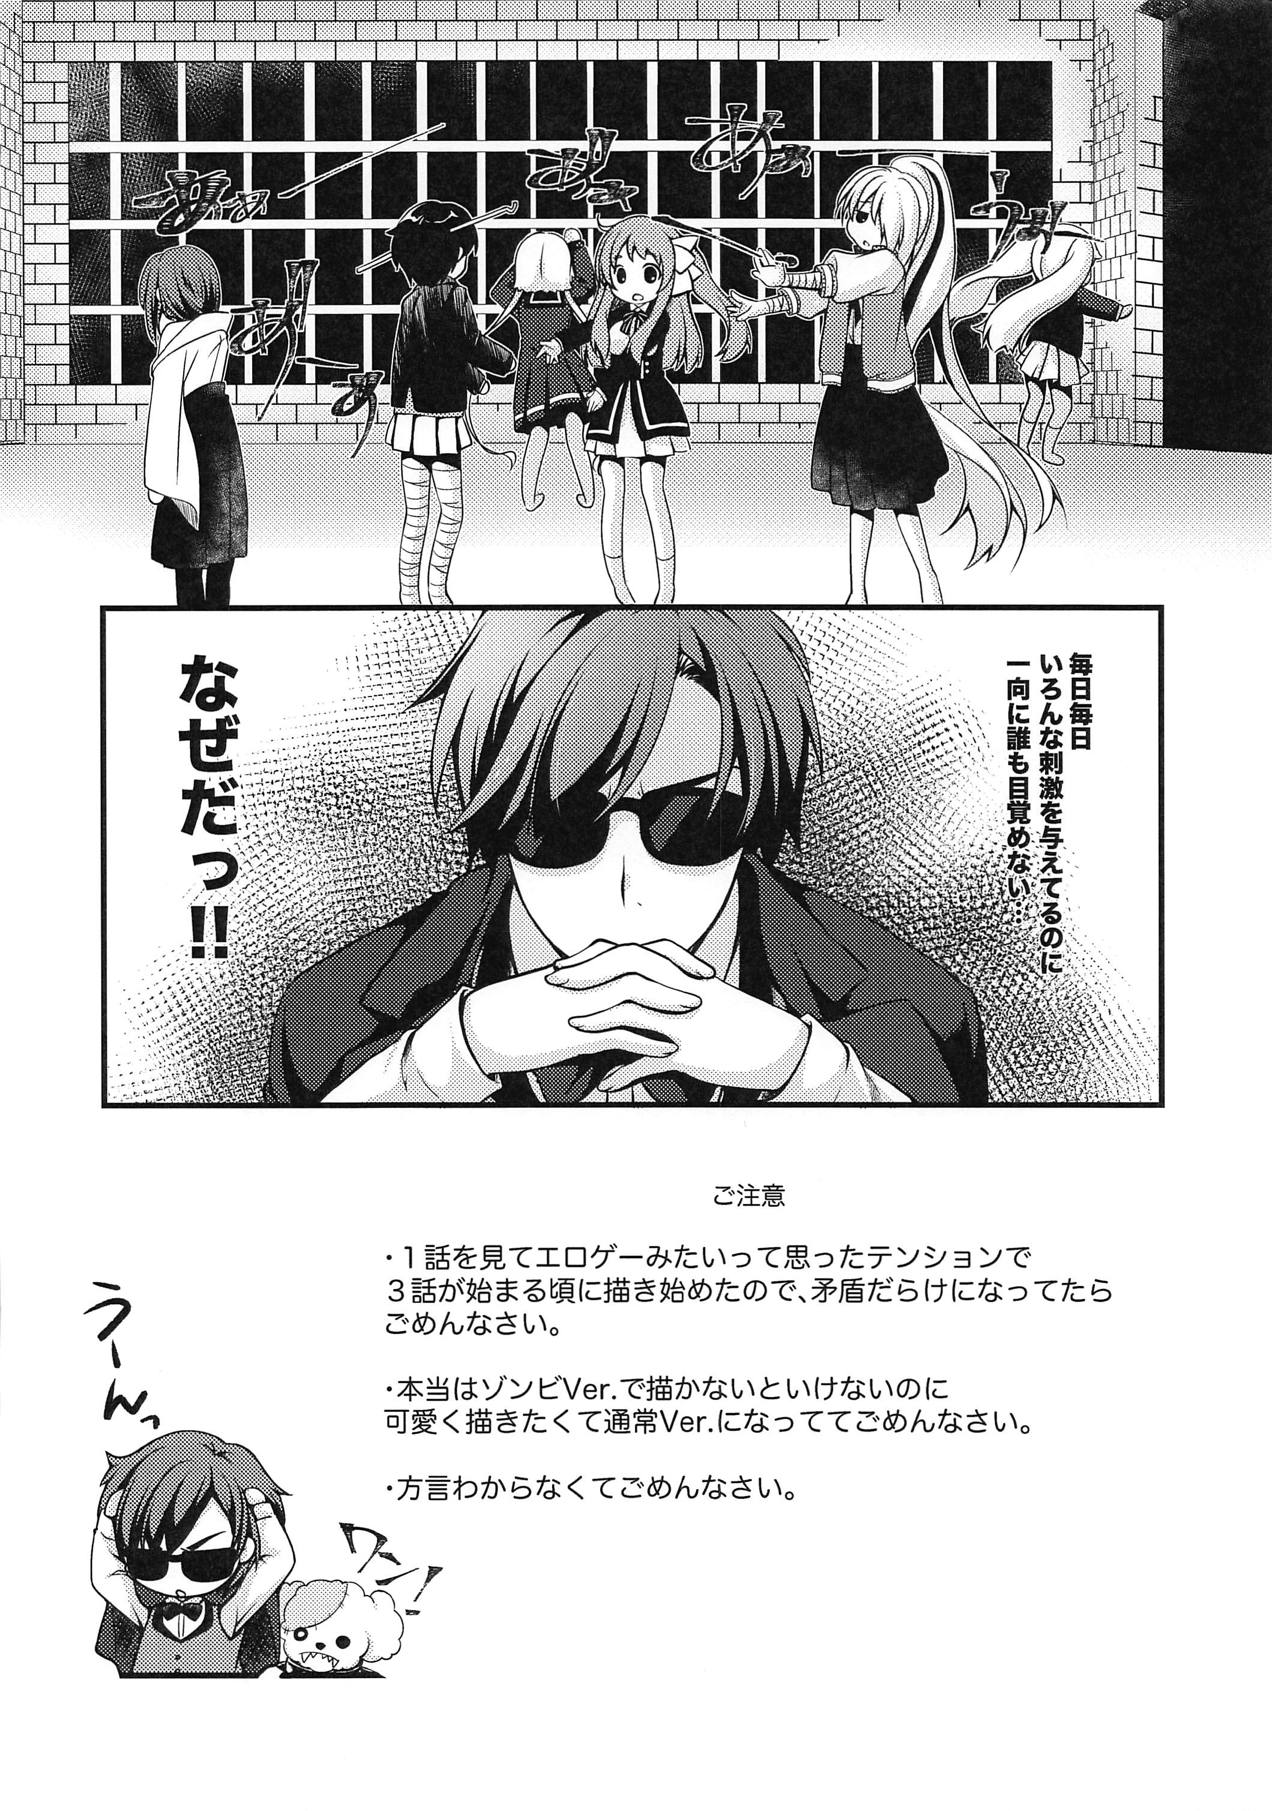 [Kuma x Usagi (Sakura Rio)] Nemureru Saga no Zombie (Zombie Land Saga) [2019-01-04] page 3 full